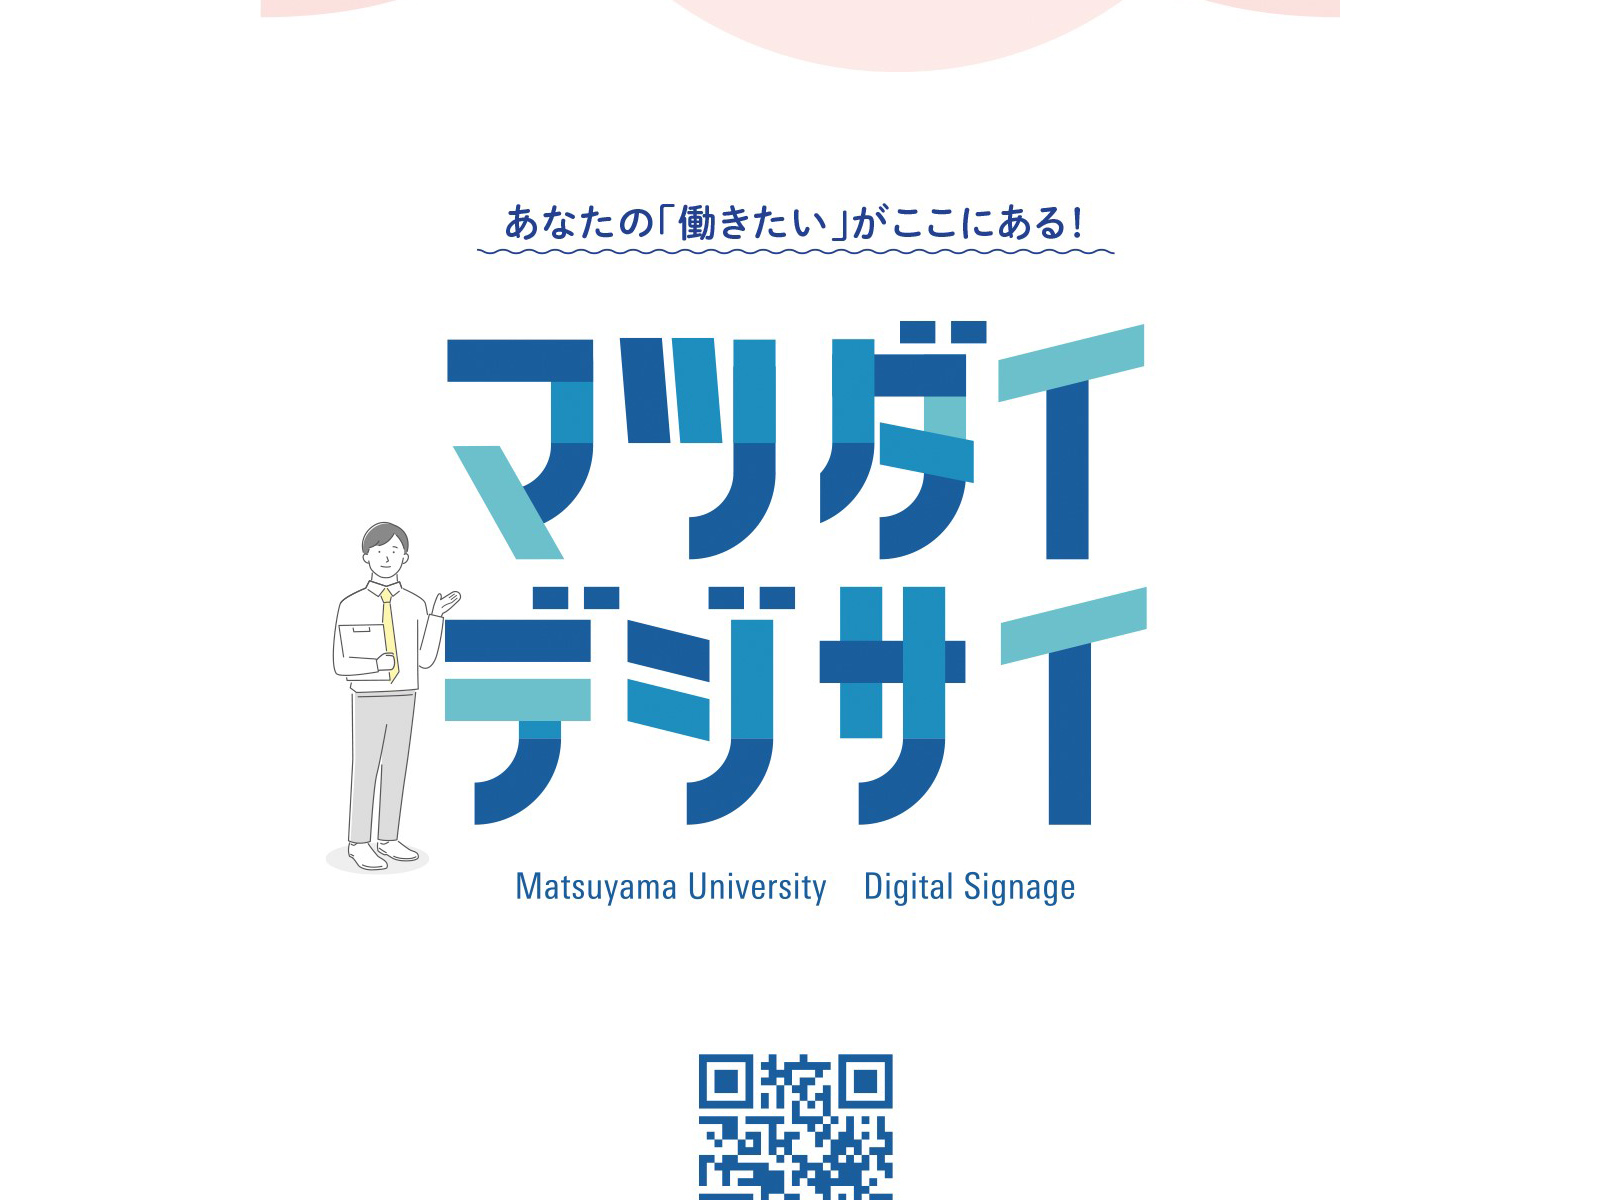 松山大学生と企業をつなぐ、デジタルサイネージ「マツダイデジサイ」